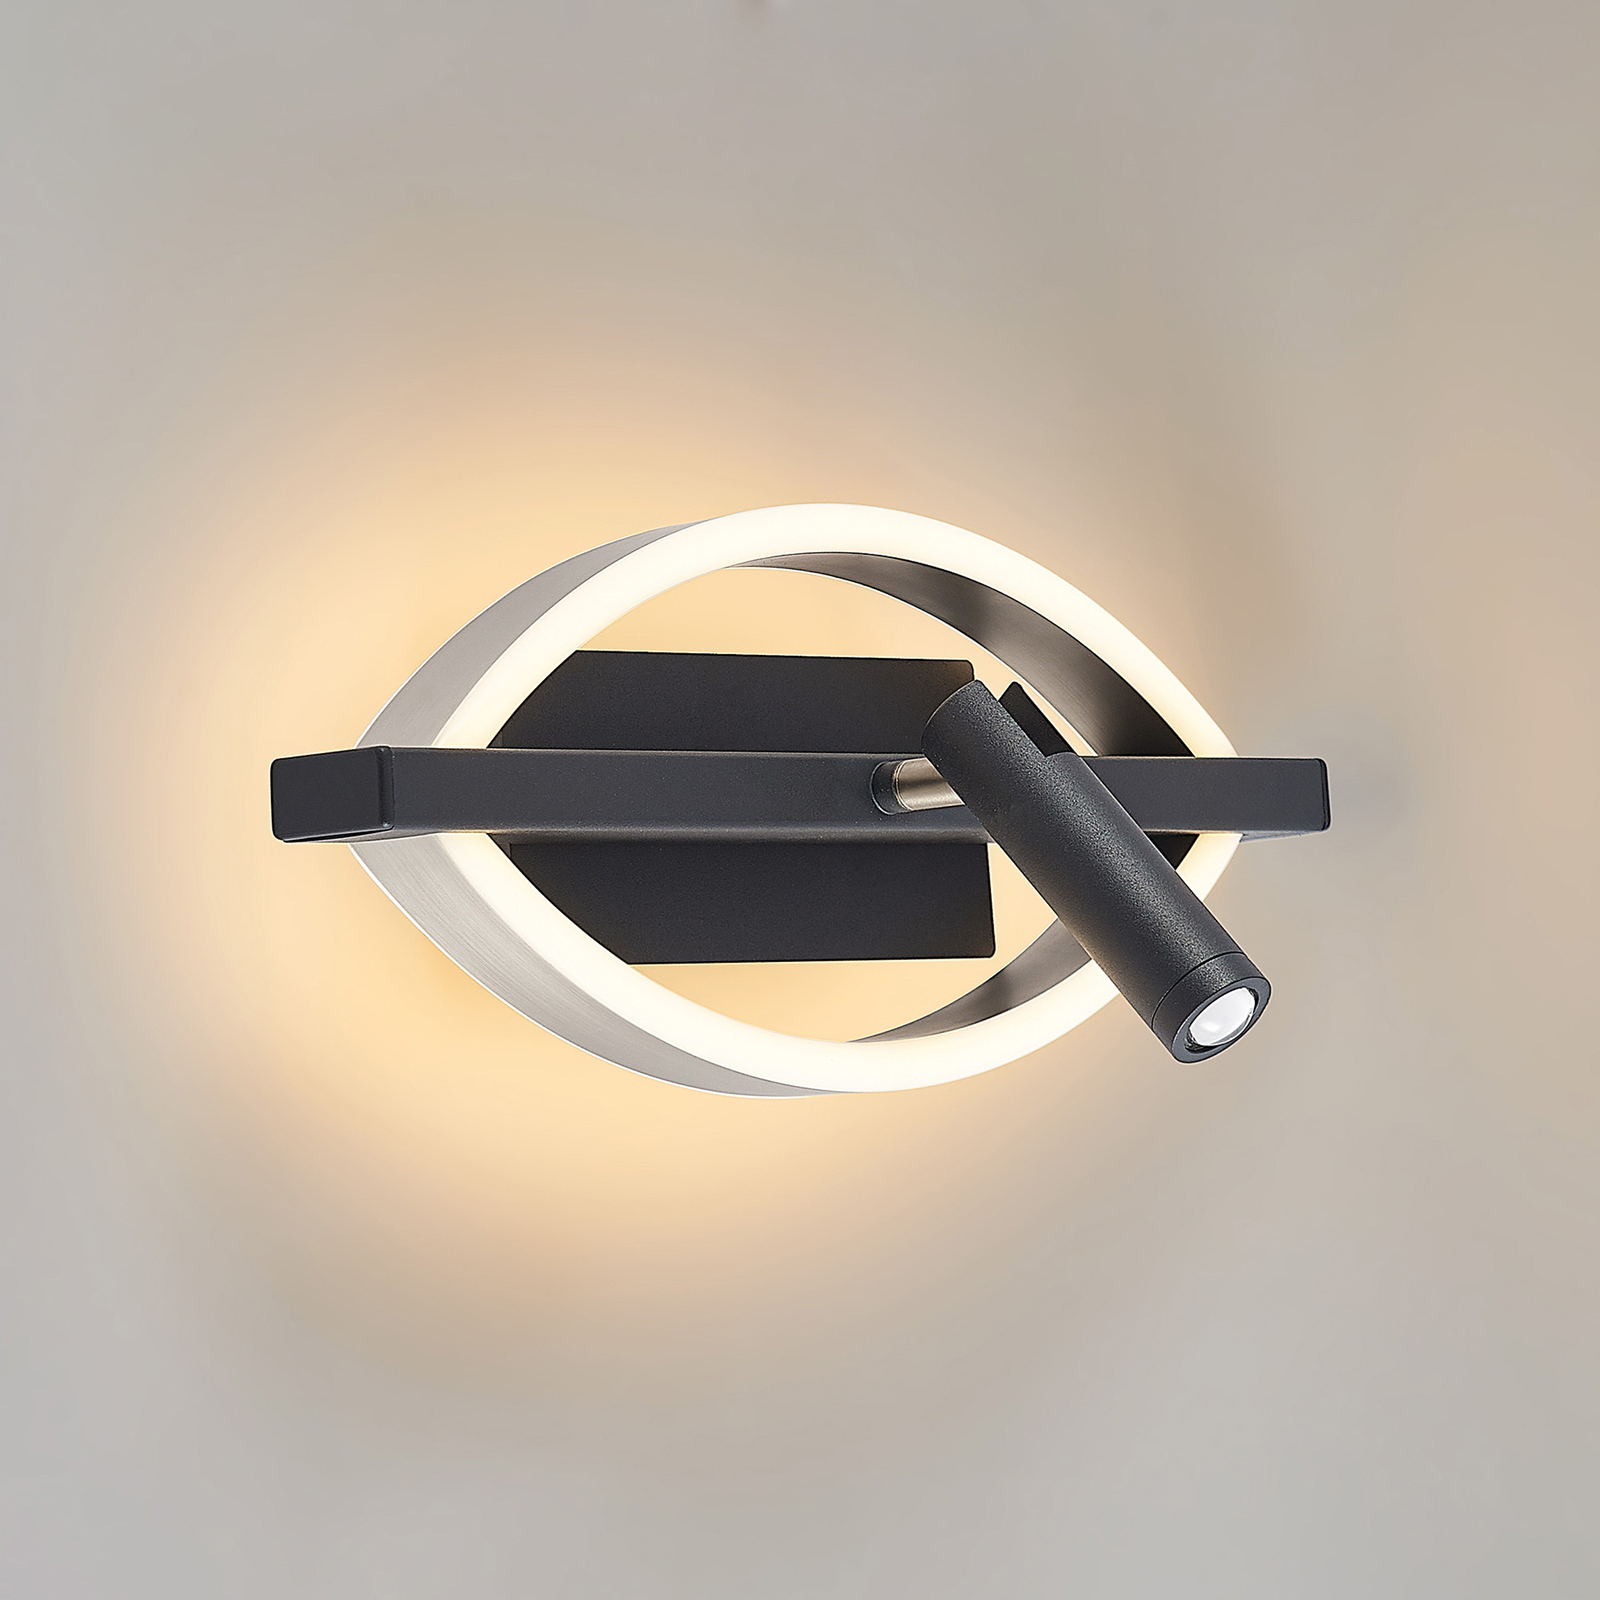 Lucande Matwei aplique LED, ovalado, níquel